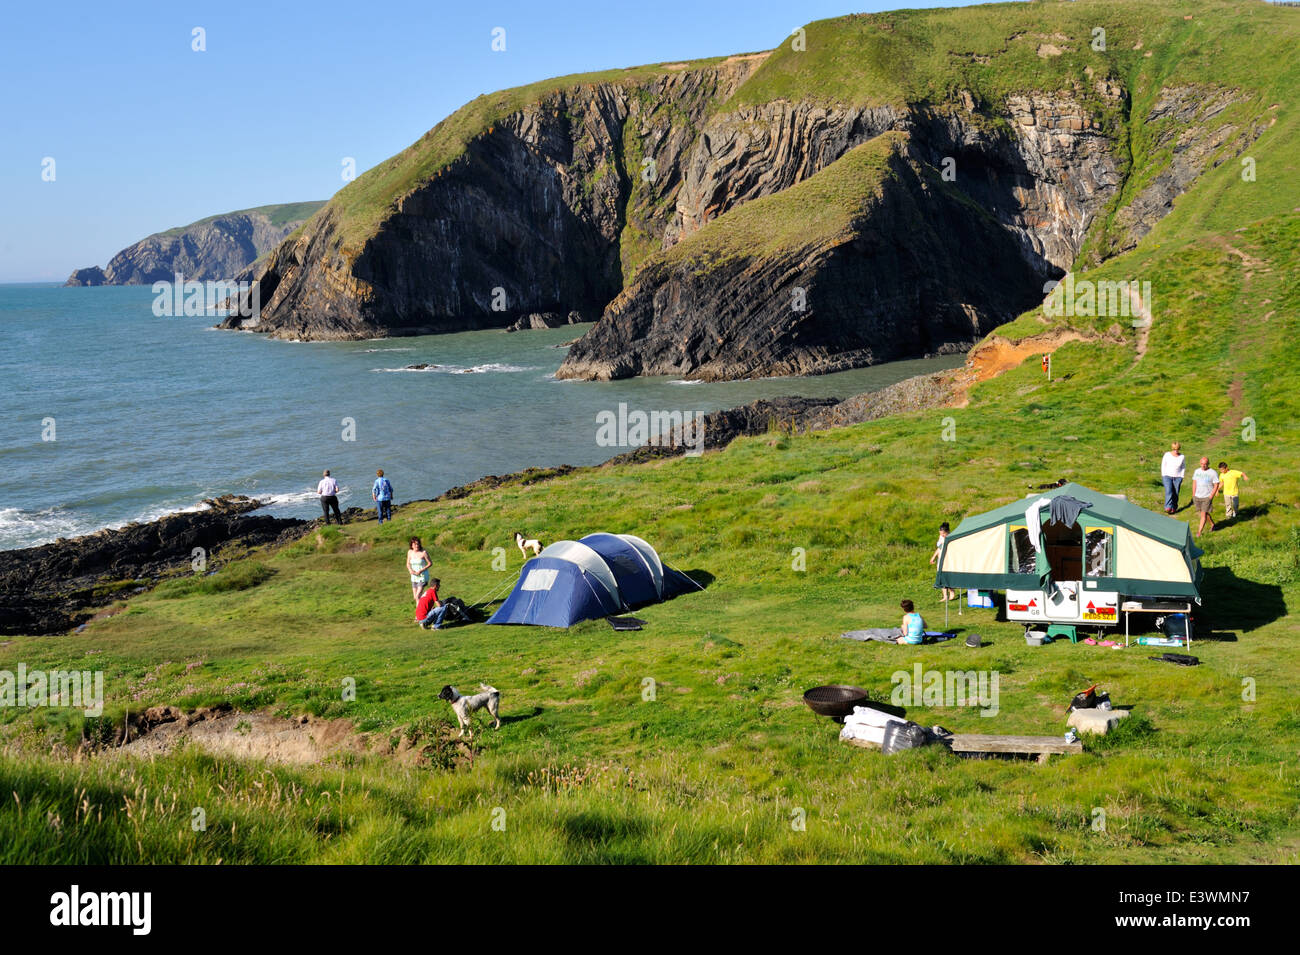 Camping le long de la côte du Pembrokeshire, Pays de Galles de l'ouest. Près de la Baie d'Ceibwr Banque D'Images